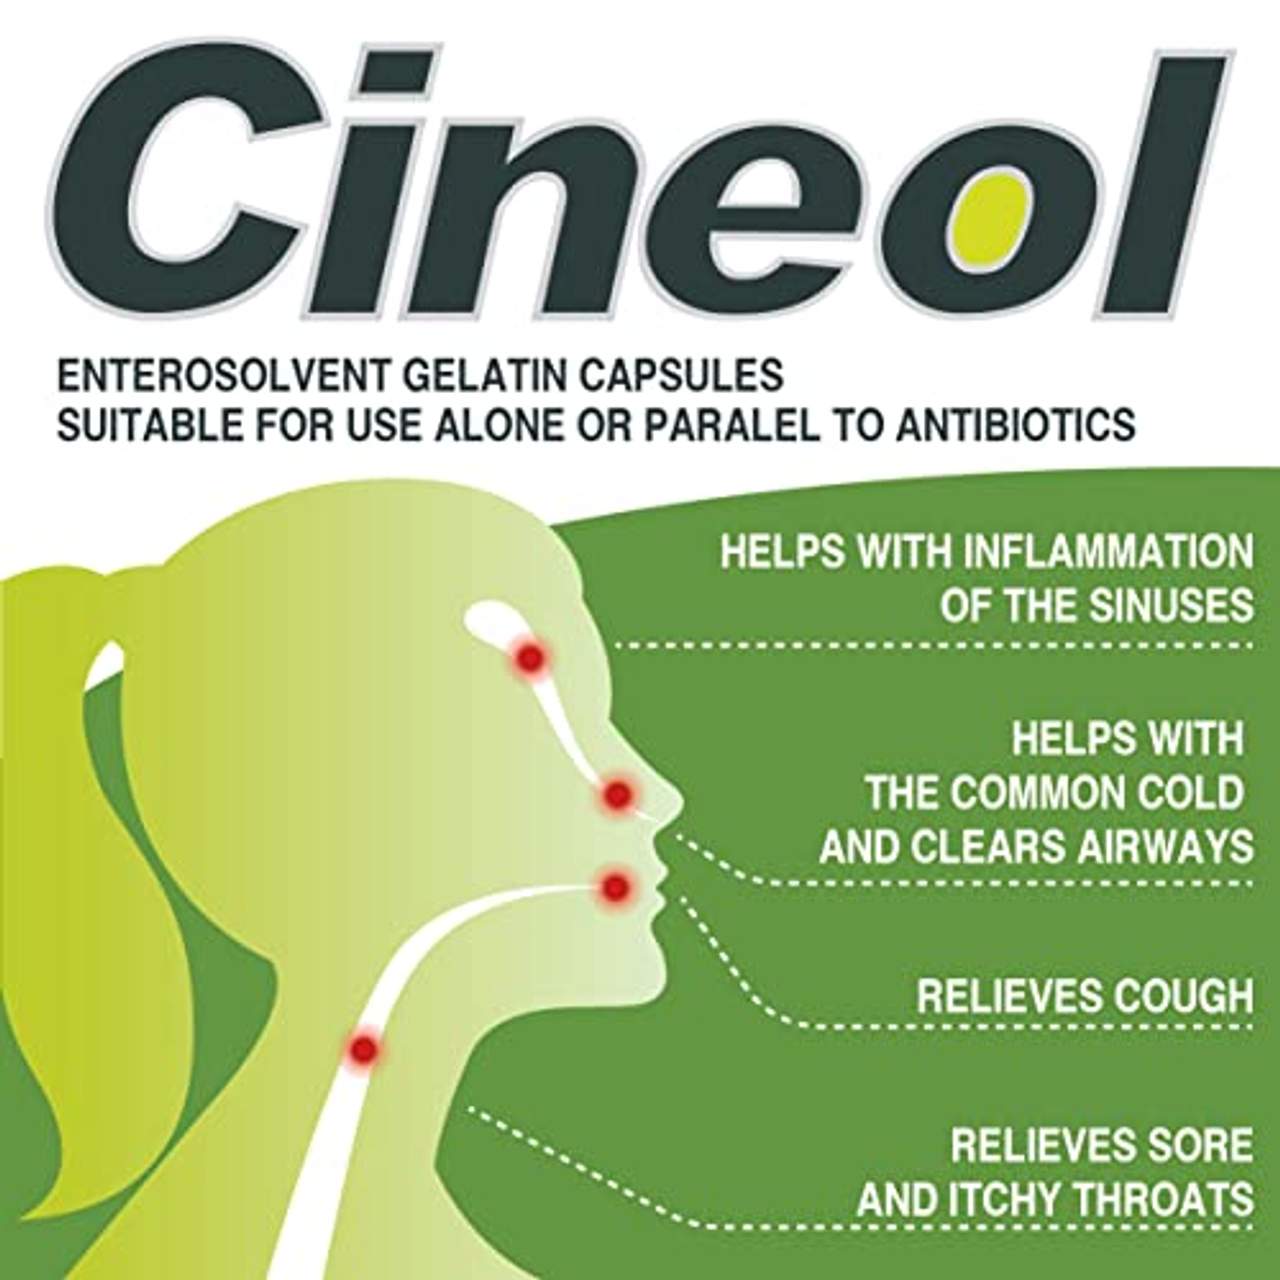 Cineol eucalyptol 100% natürlich